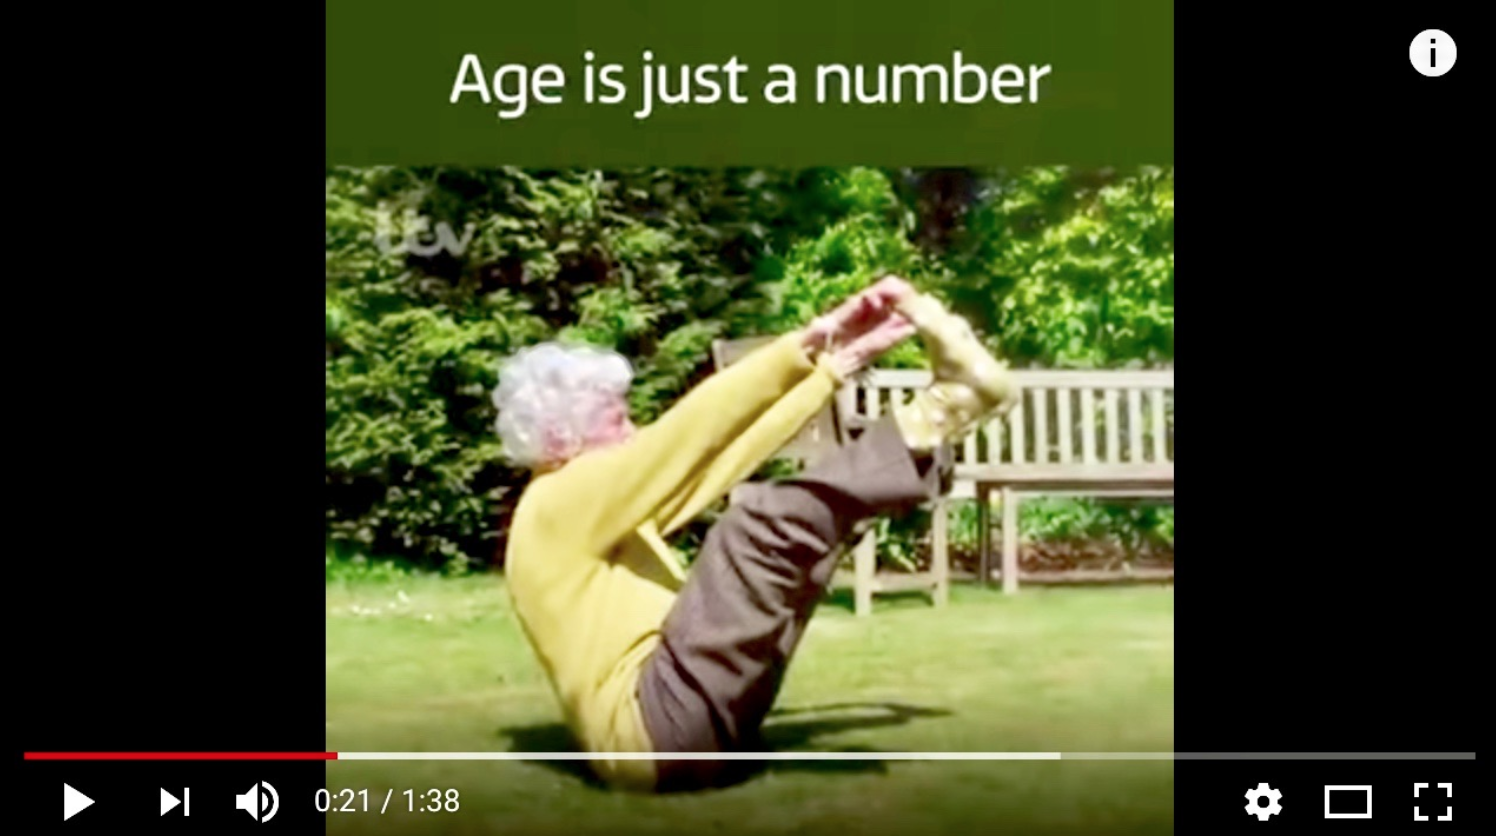 Lerne von den Besten! 105 Jahre Alt – fit & lebensfroh! Das kannst du auch